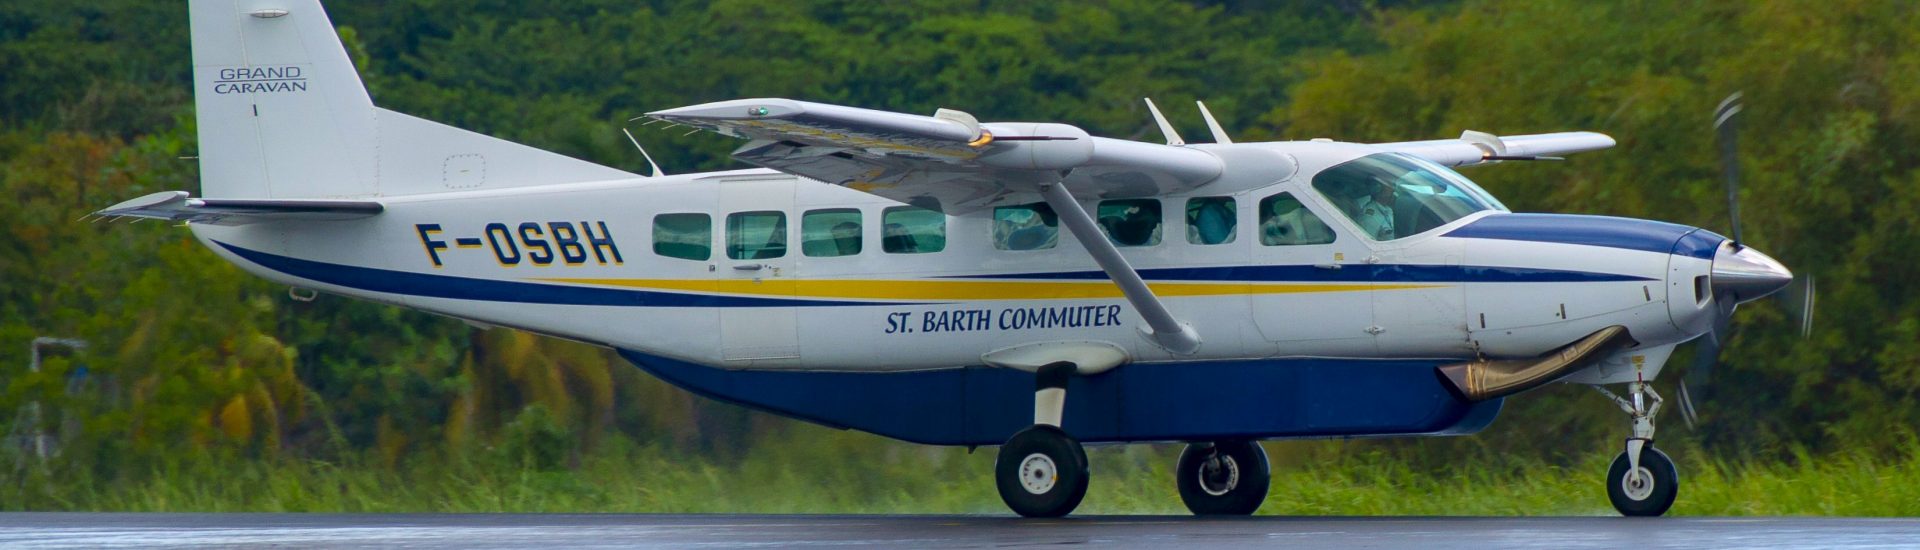 Cessna 208B St. Barth Commuter F-OSBH